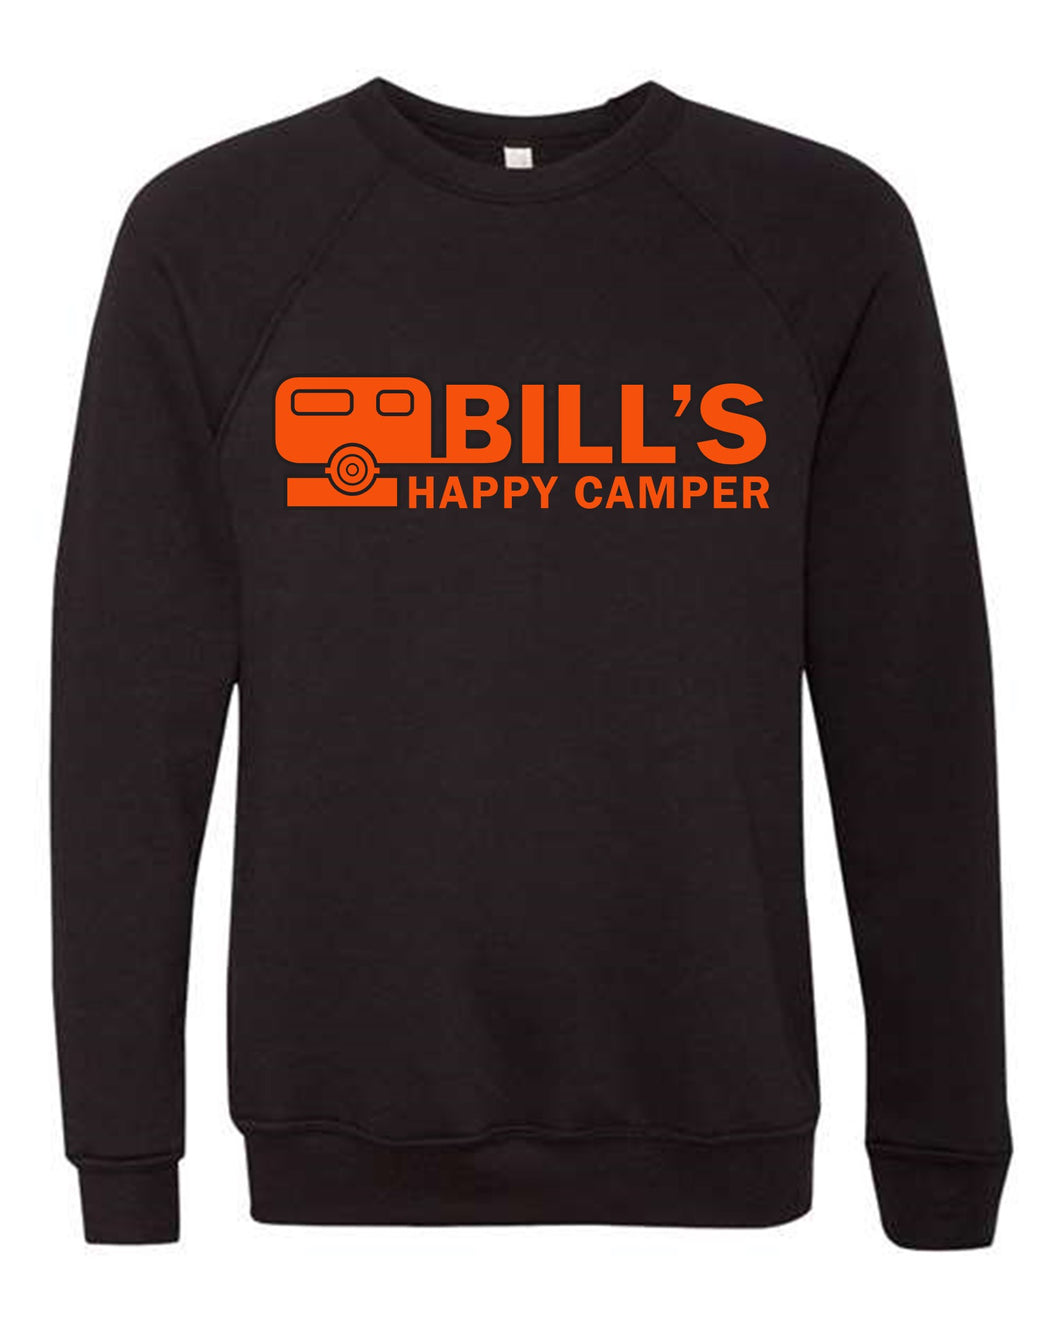 Bill's Happy Camper Crewneck Sweatshirt